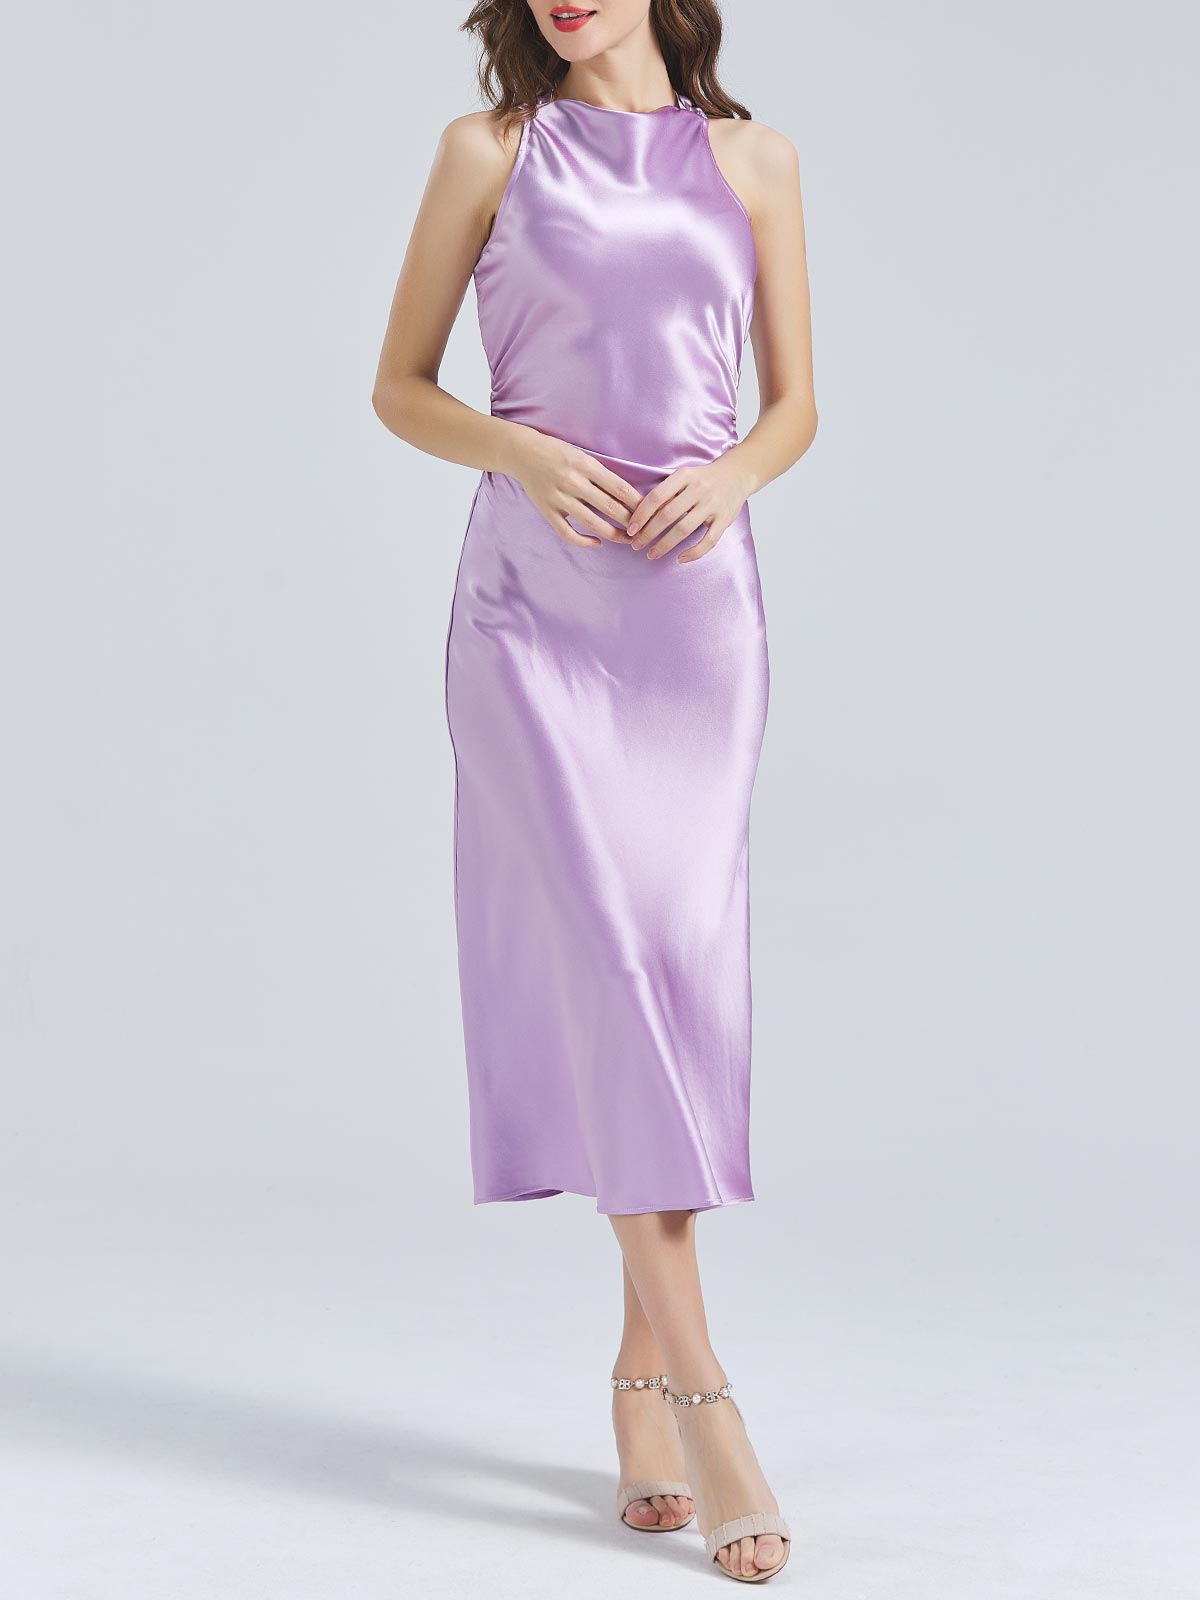 MissJophiel Acetat-Satin mit hohem Ausschnitt, offener Rücken, Teelänge, halbformale Midi-Cocktailkleider, Hochzeitskleid